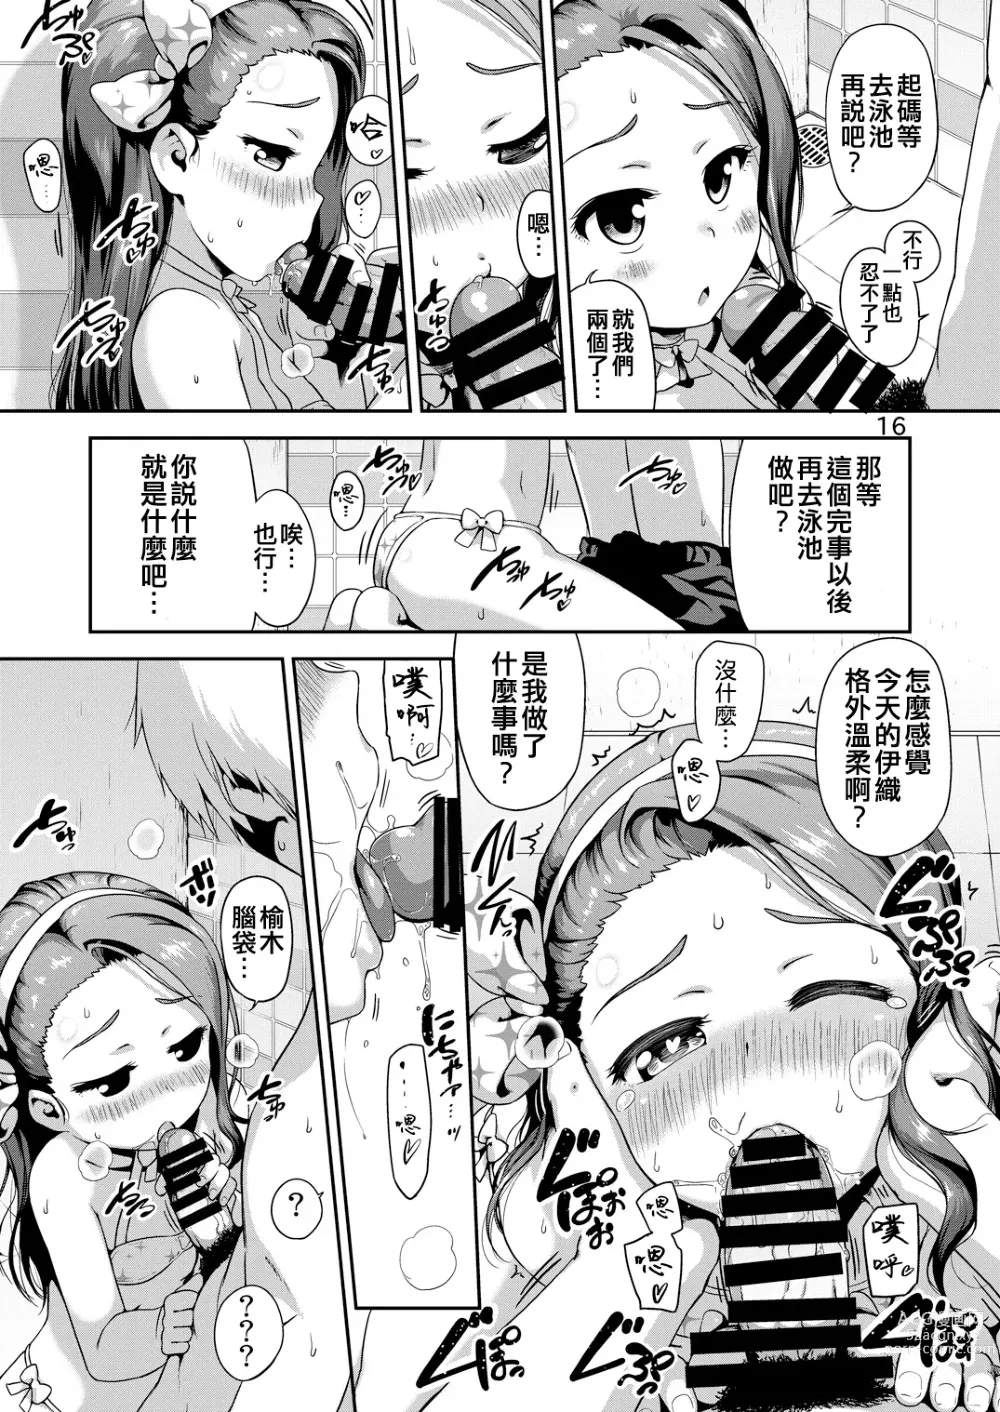 Page 16 of doujinshi IORI MIZUGI SHOW